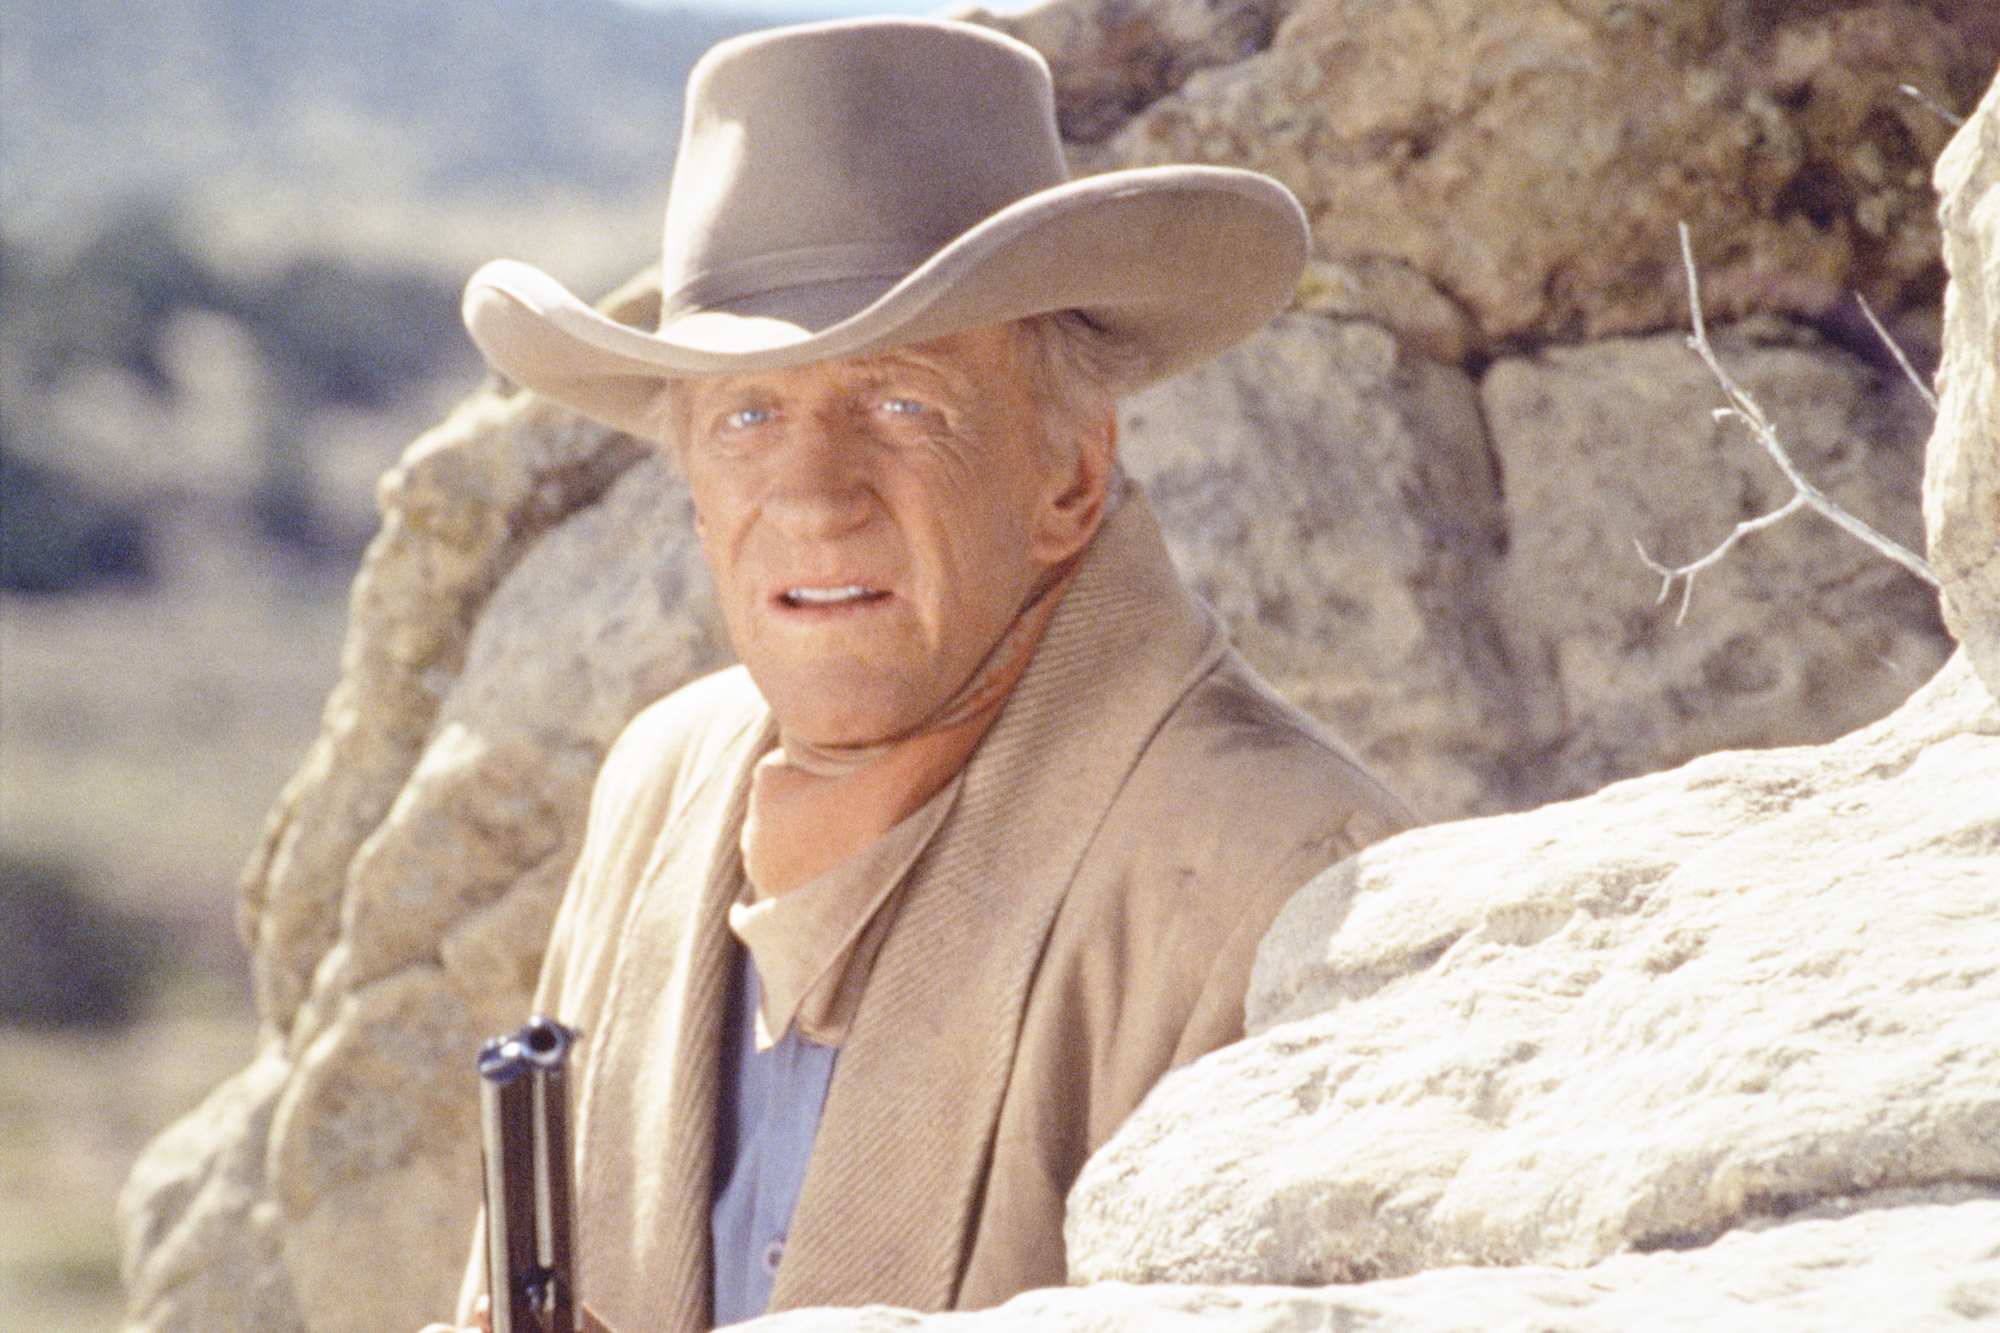 'Gunsmoke: One Man's Justice' James Arness as Matt Dillon hiding behind a rock, holding a gun. He's wearing his Western costume.